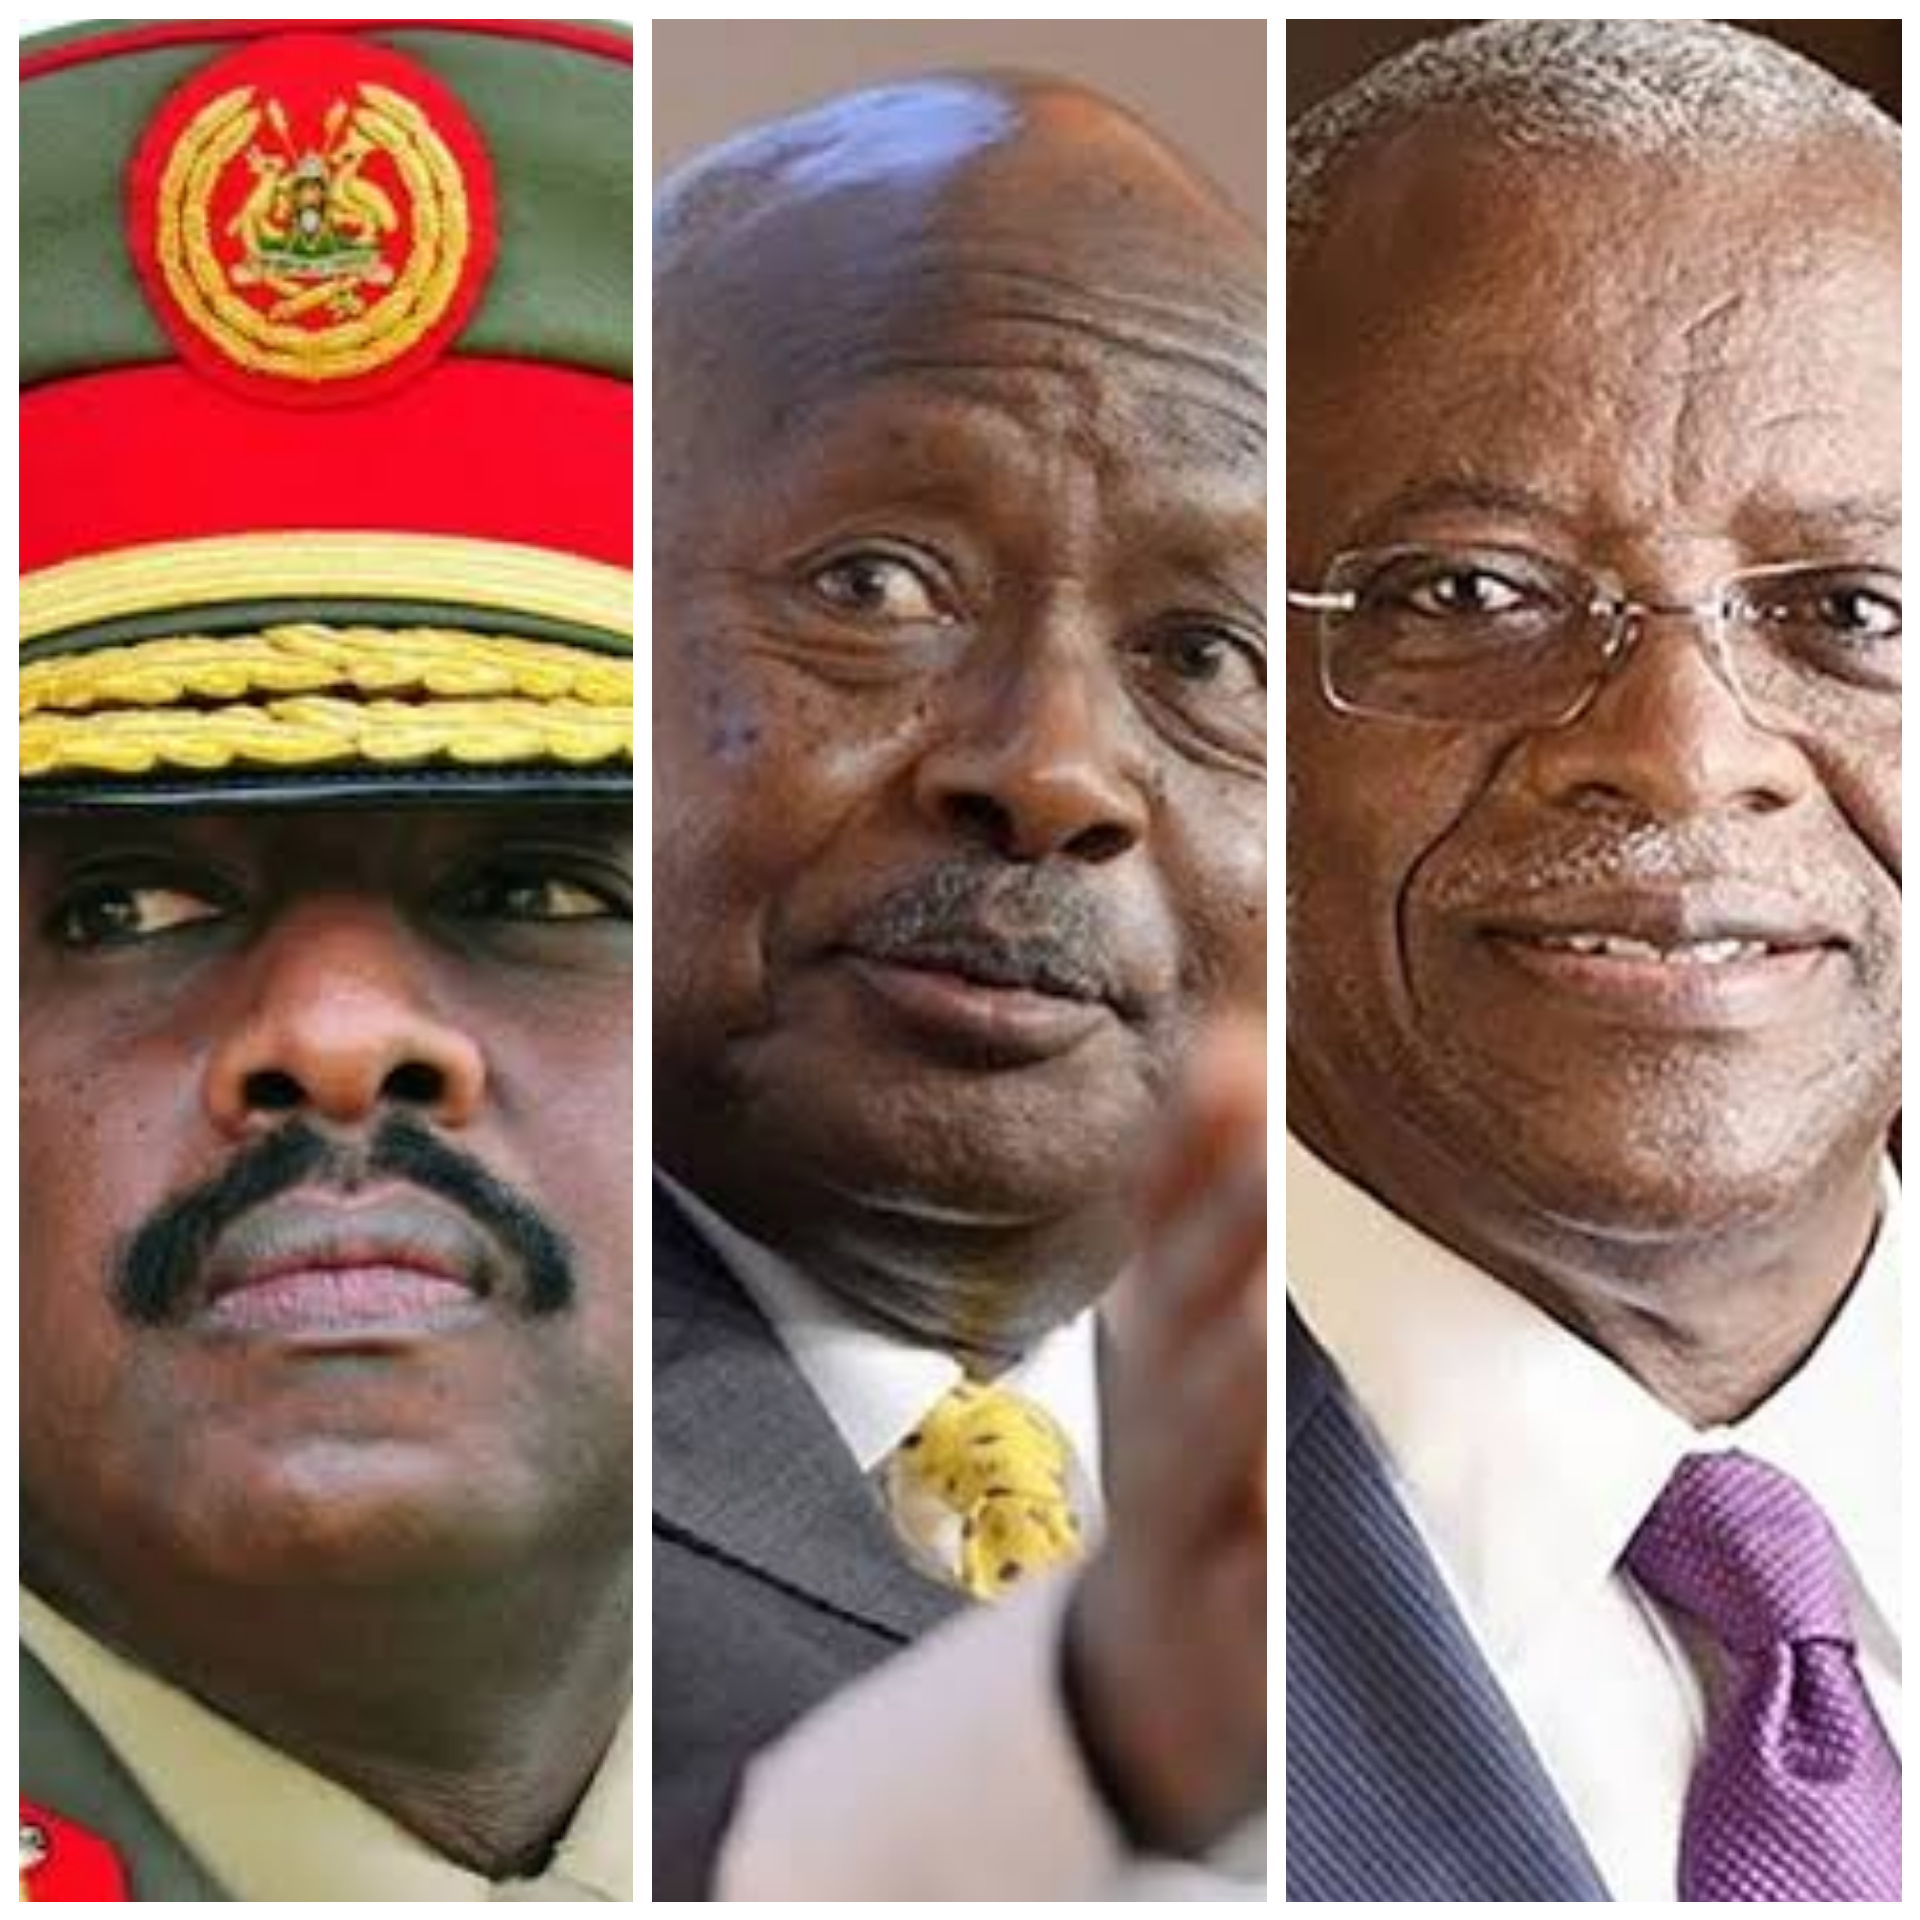 L-R: Lt Gen Muhoozi Kainerugaba, President Museveni, and Amama Mbabazi